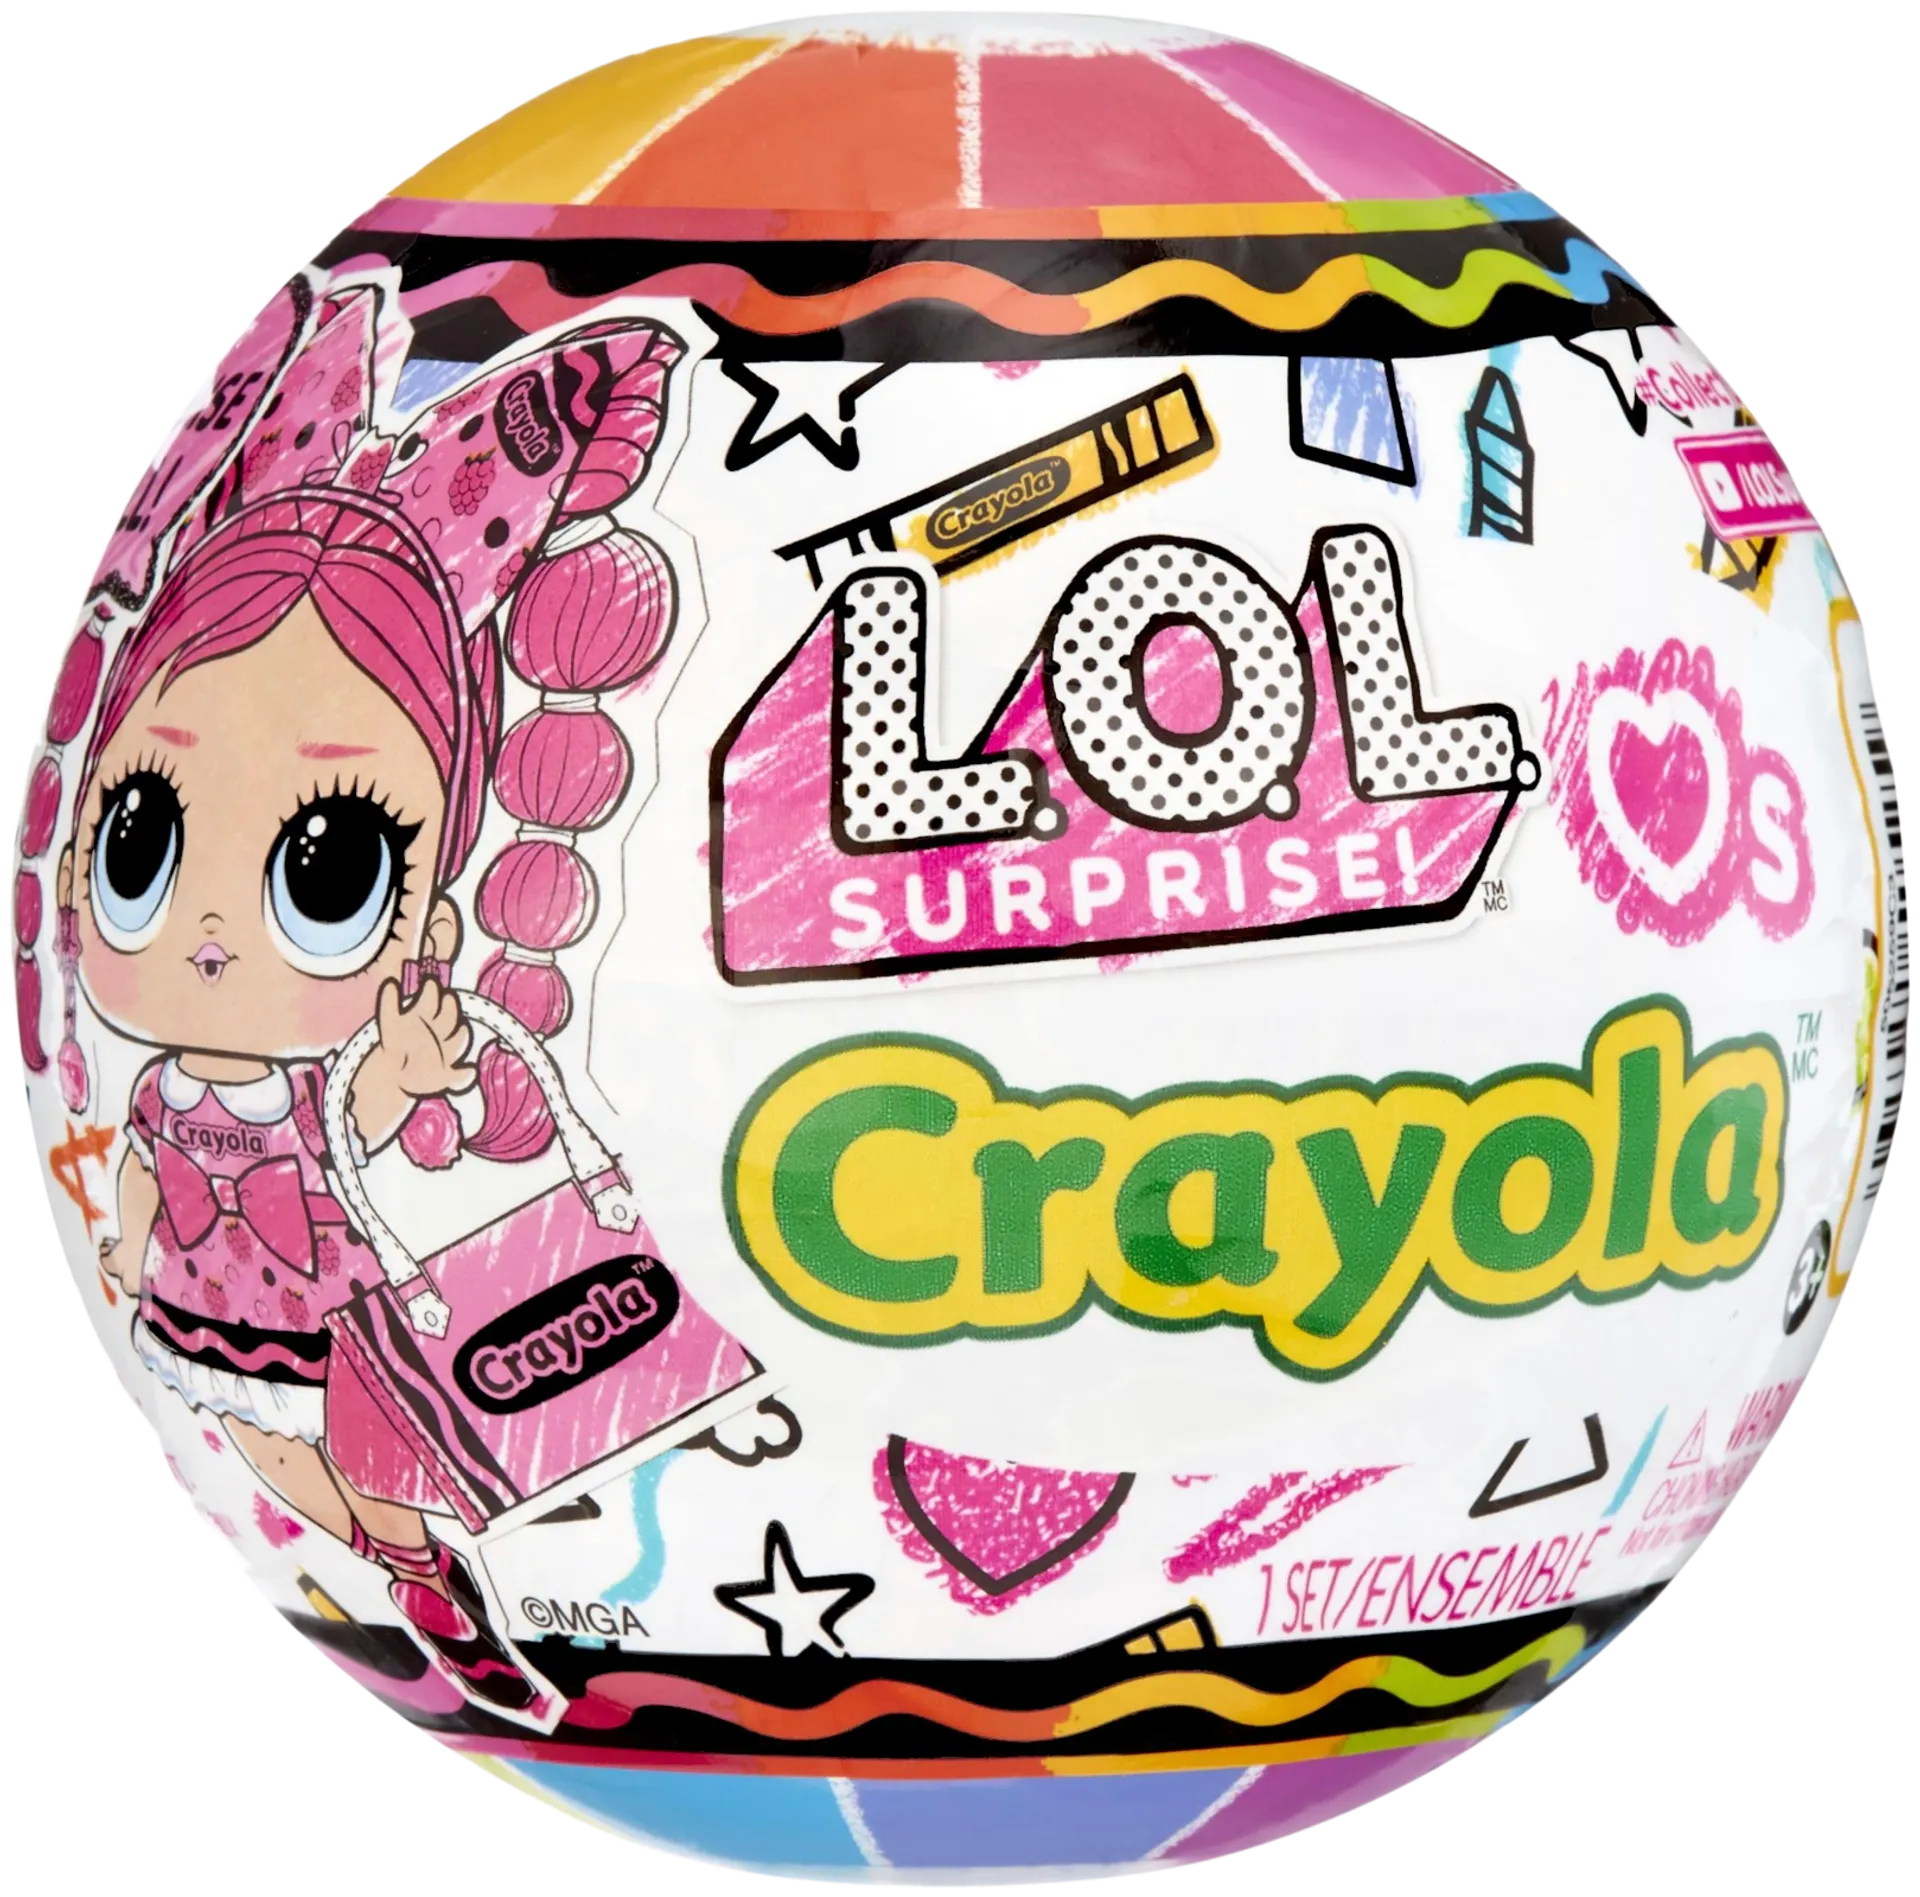 L.O.L. yllätysnukke Crayola, erilaisia - 2